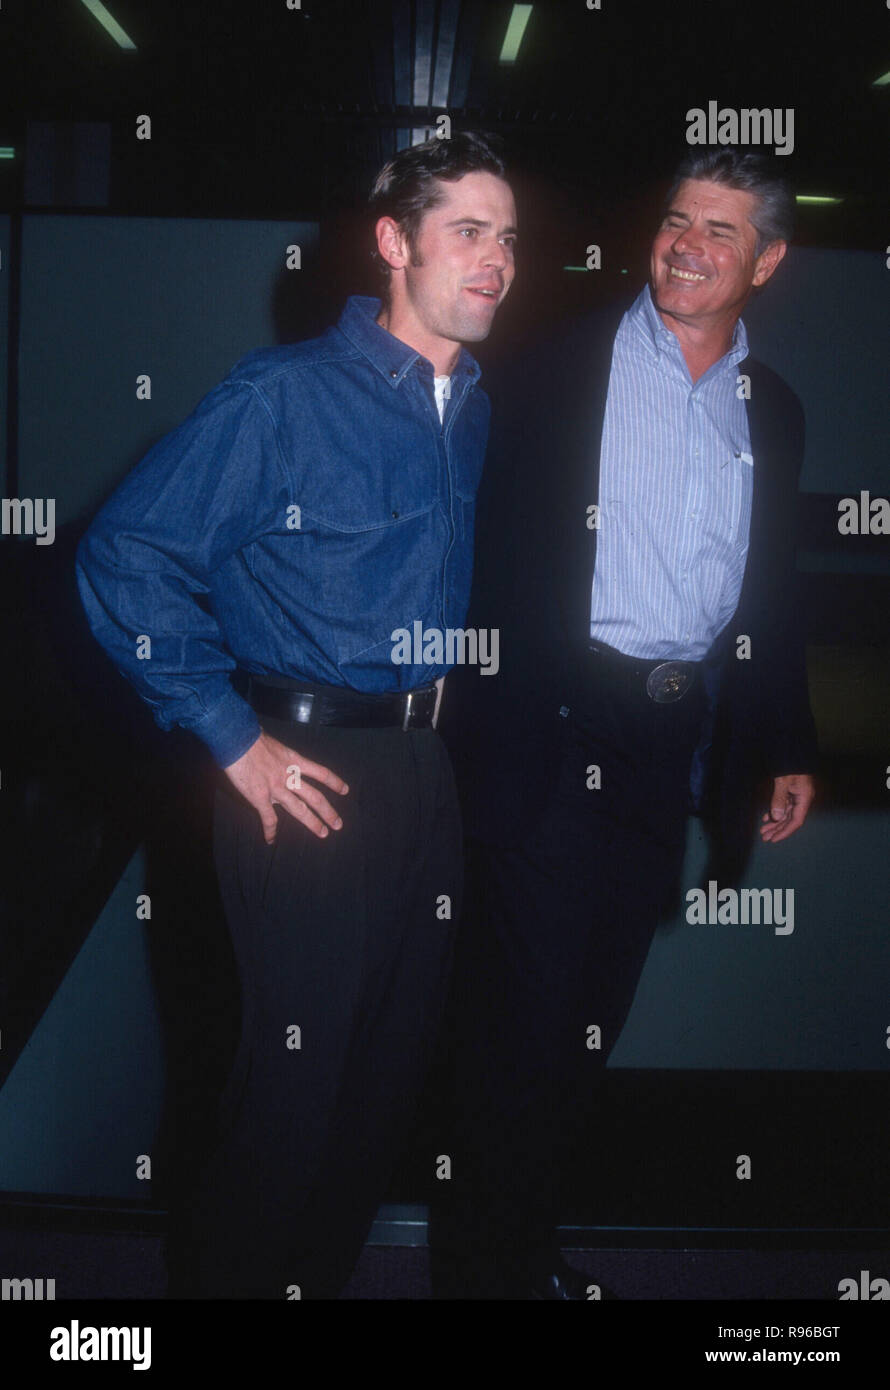 WEST Hollywood, CA - 11. Mai: Schauspieler C Thomas Howell und Vater Chris Howell die Premiere von "American Heart' am 11. Mai 1993 in den Mittelpunkt grüne Theater in West Hollywood, Kalifornien teilnehmen. Foto von Barry King/Alamy Stock Foto Stockfoto